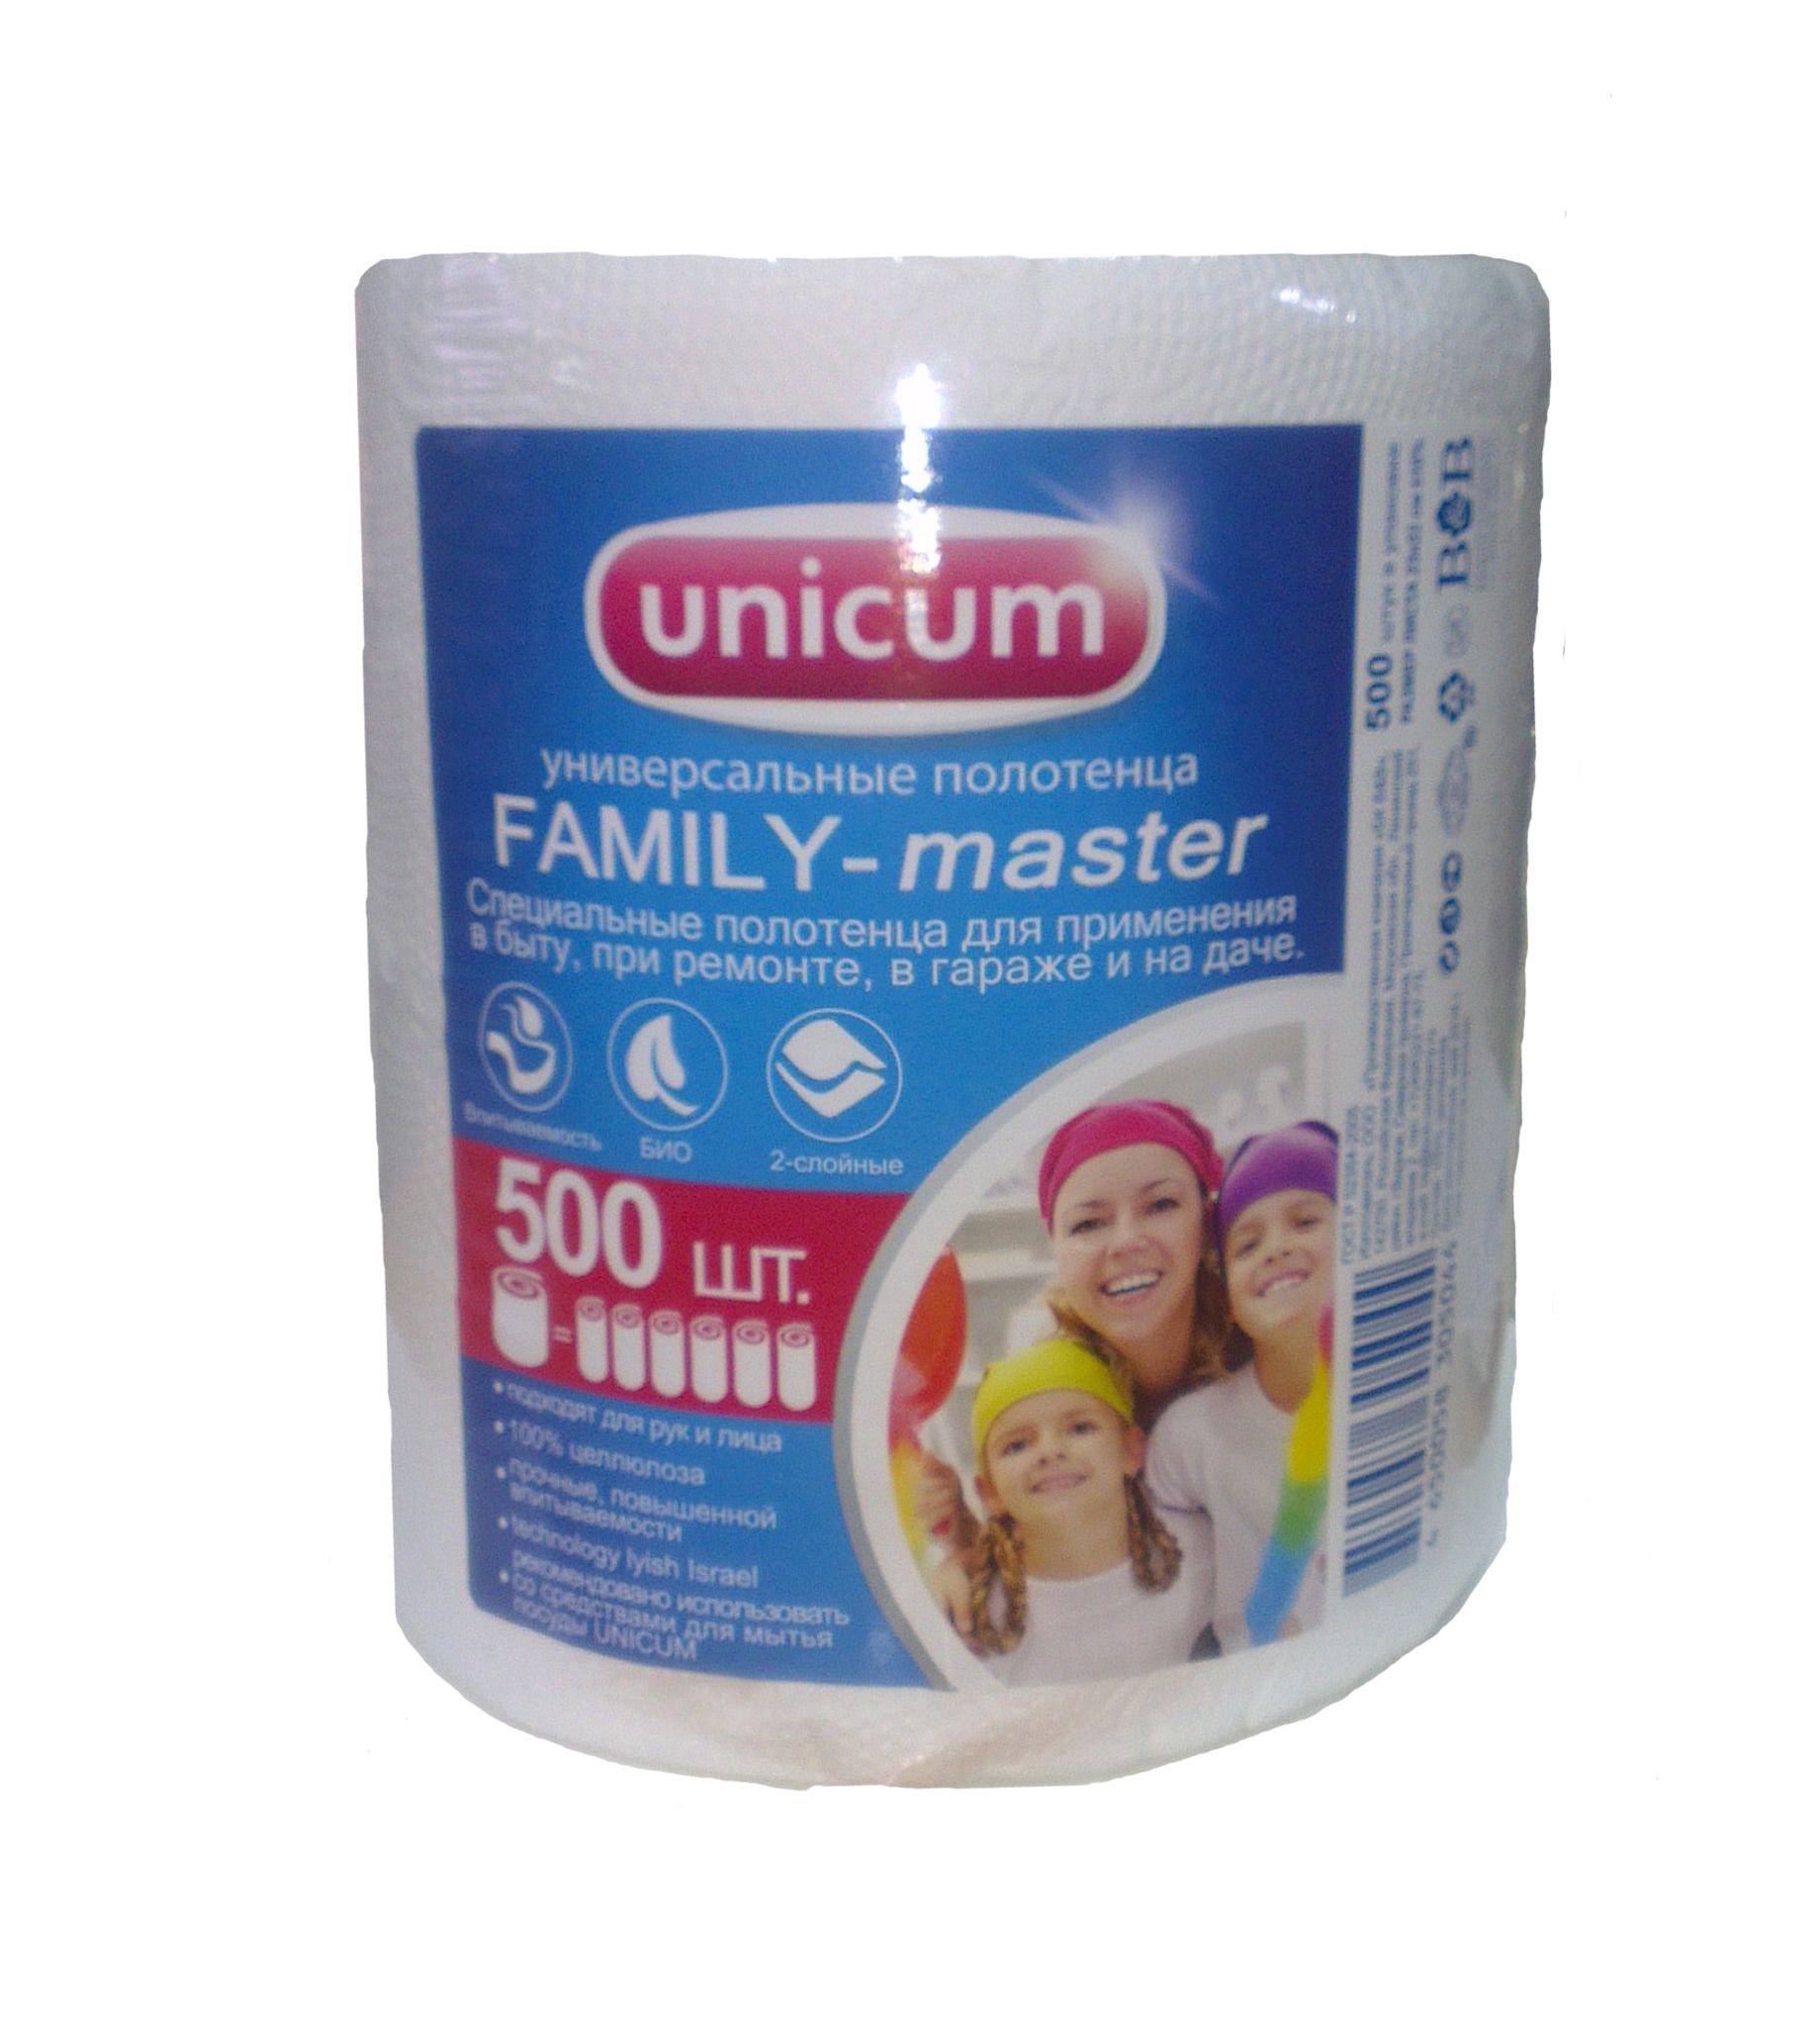 UNiCUM Универсальные полотенца отрывные Family-Master 500 листов в рулоне по 23*22 см